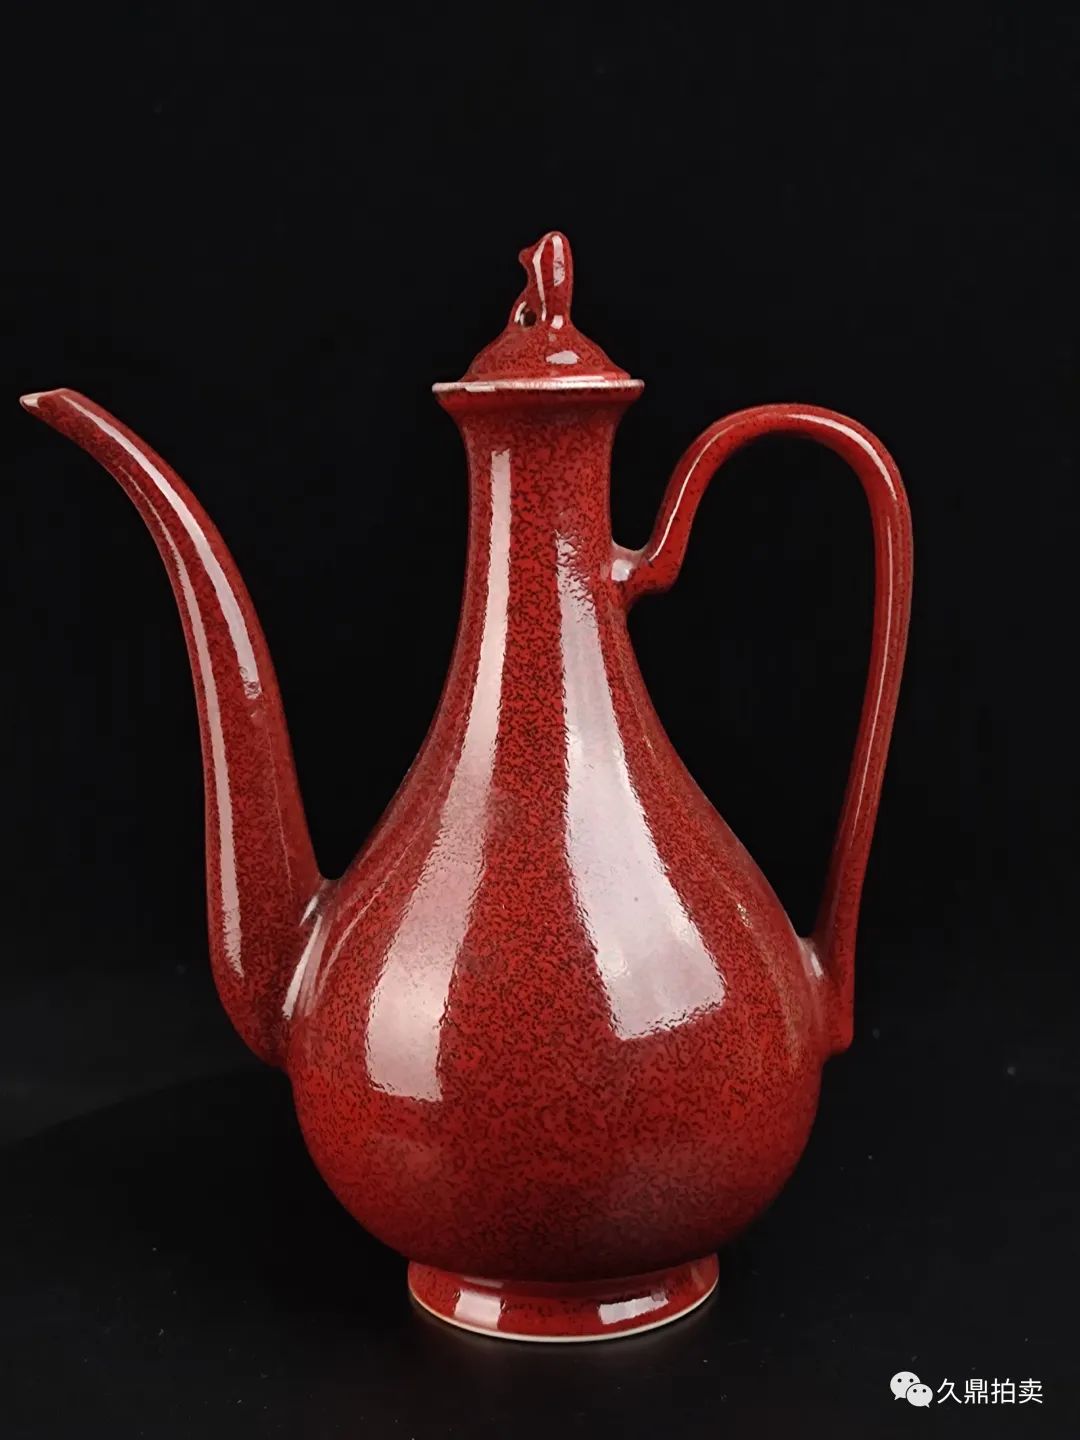 久鼎春拍 | 红釉瓷器：千姿百态的中国红